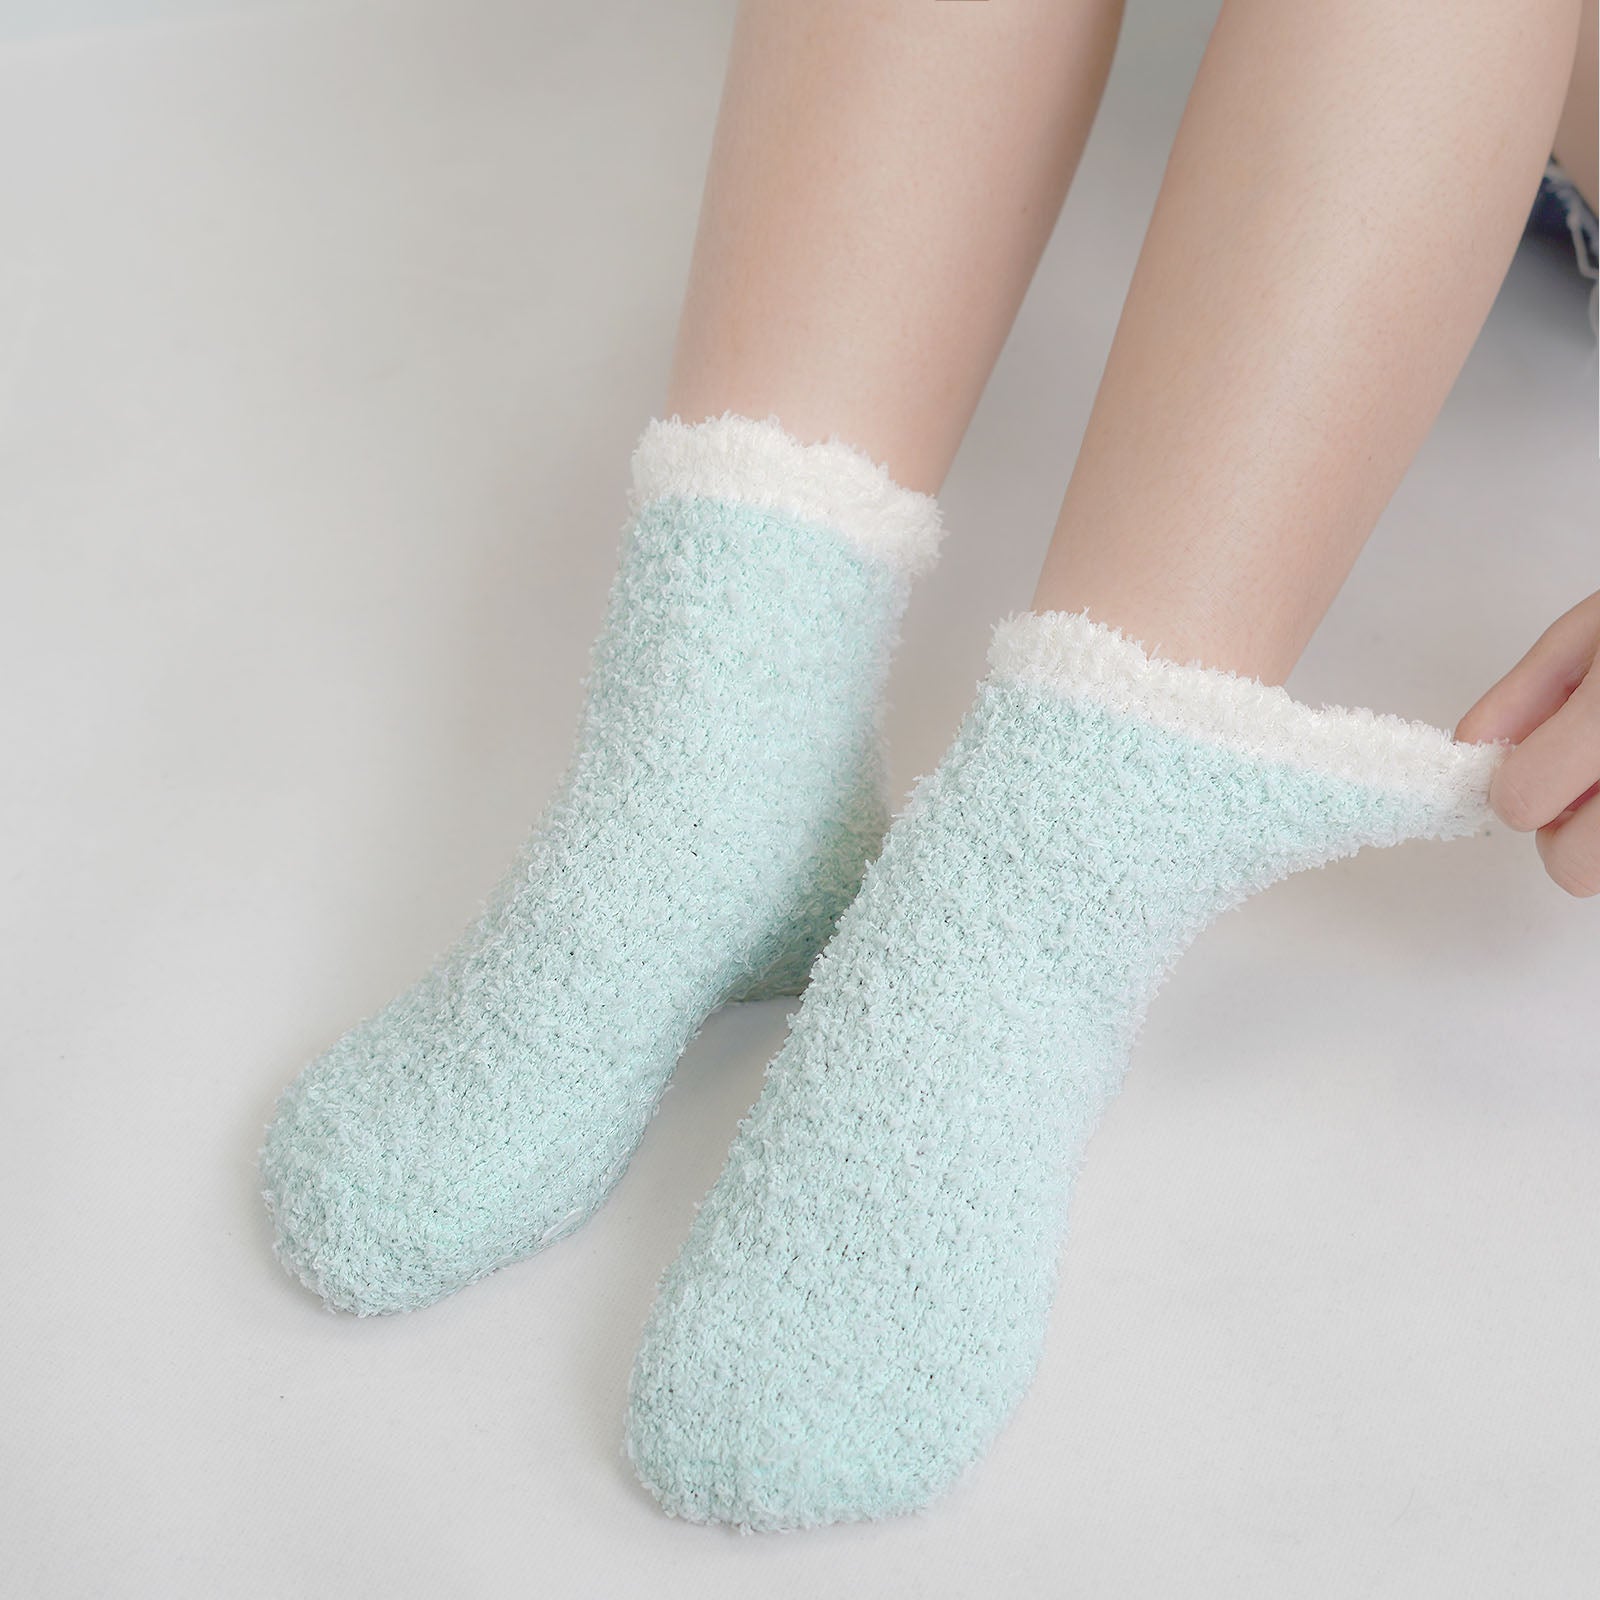 5Pairs Men's Fuzzy Socks Non Slip Grip Socks Winter Fluffy Slipper